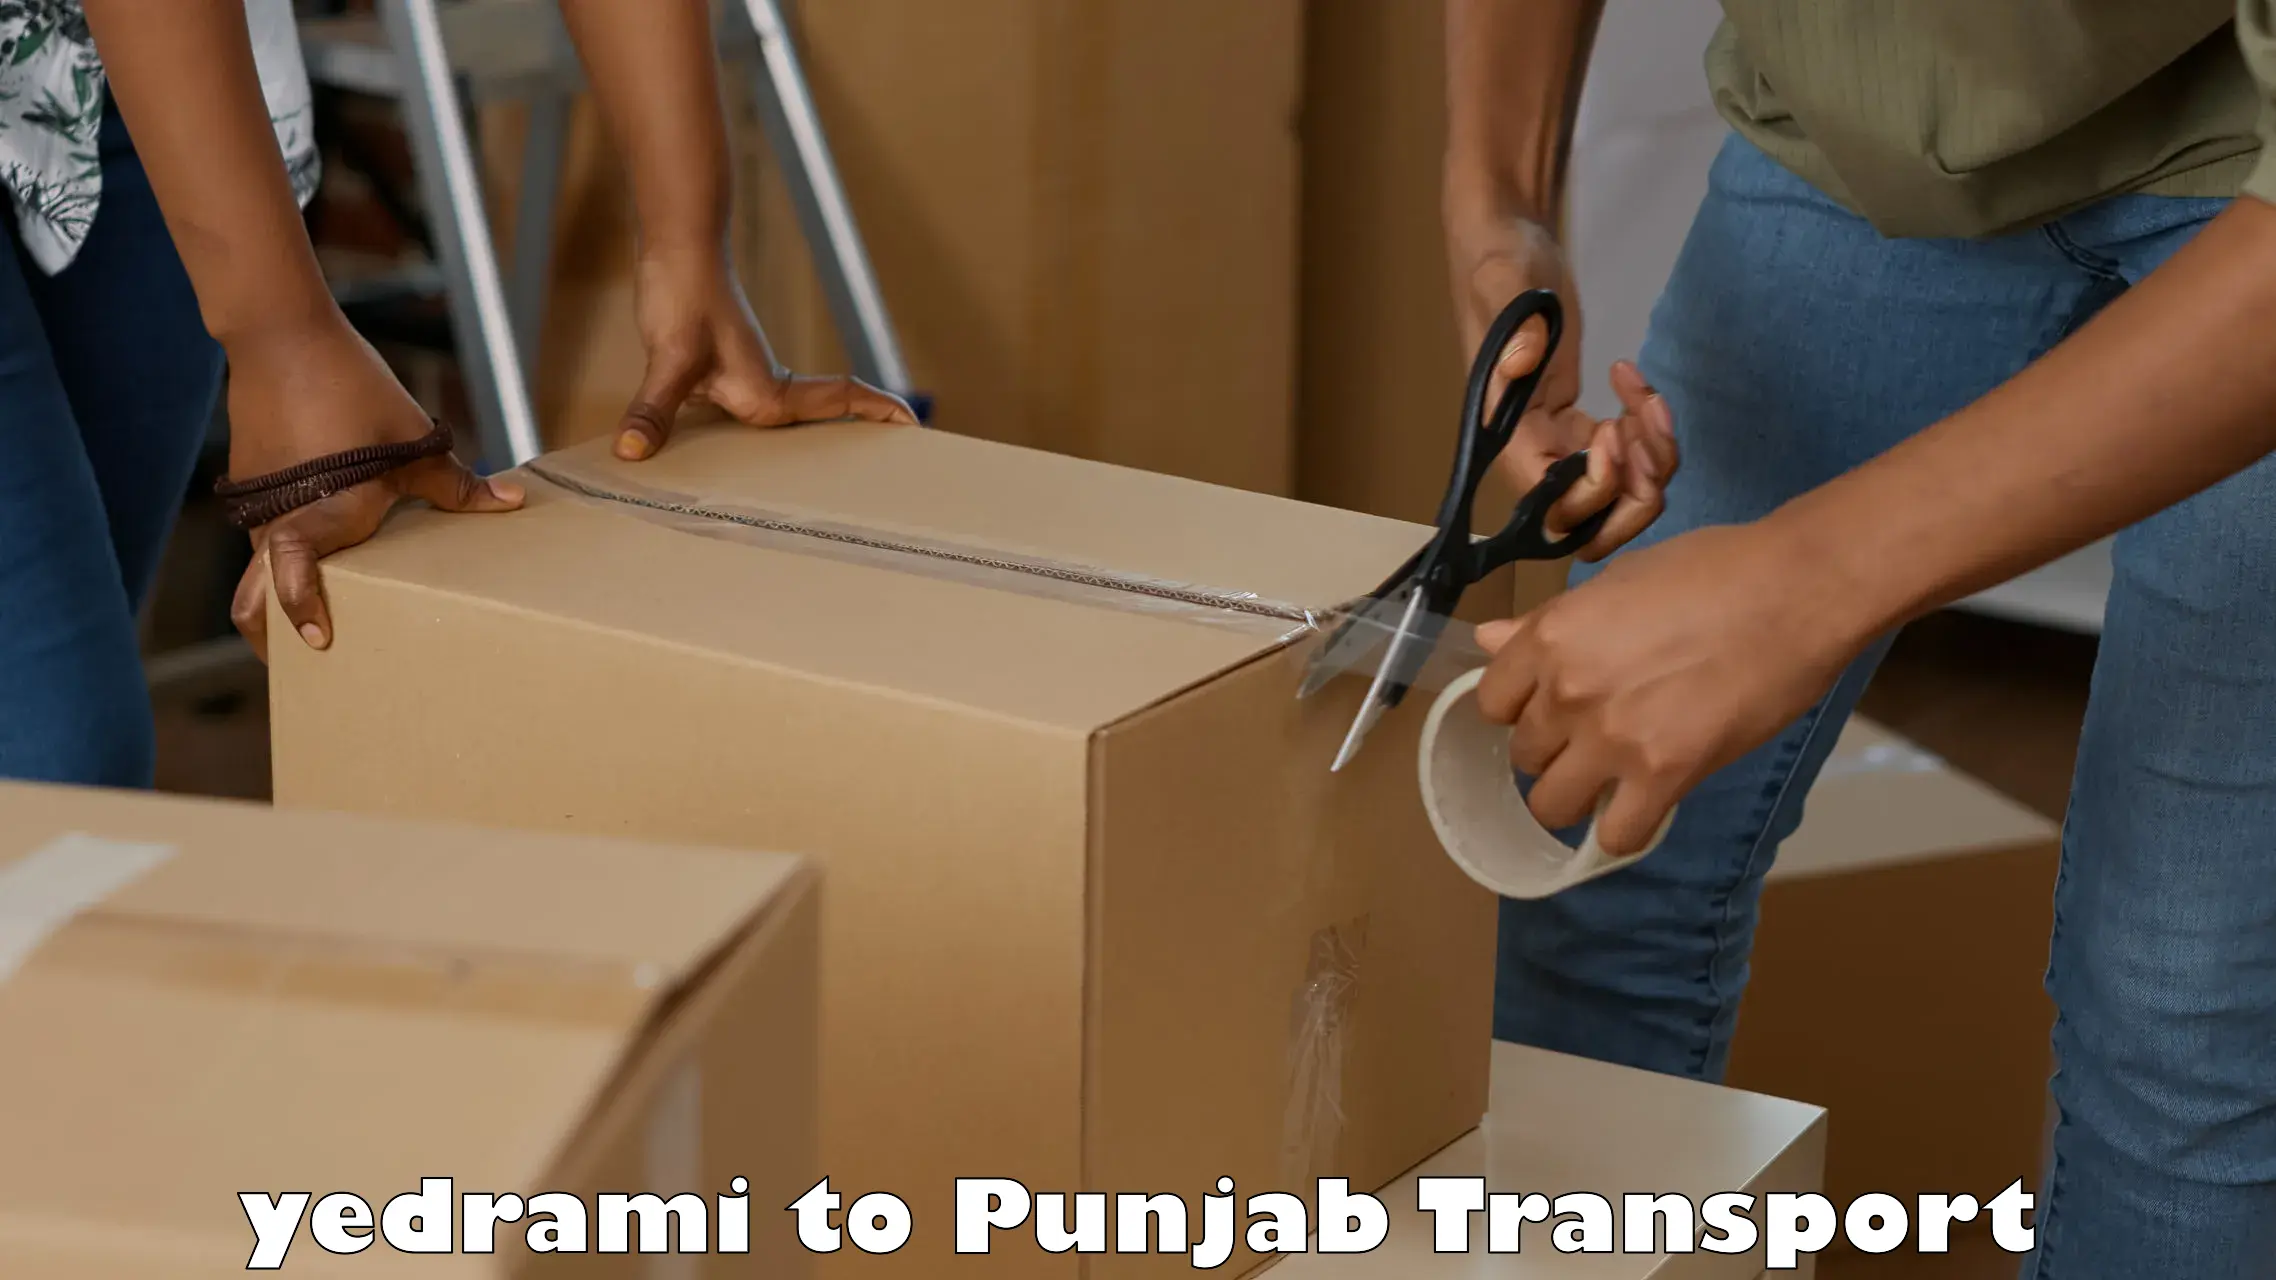 Vehicle parcel service yedrami to Punjab